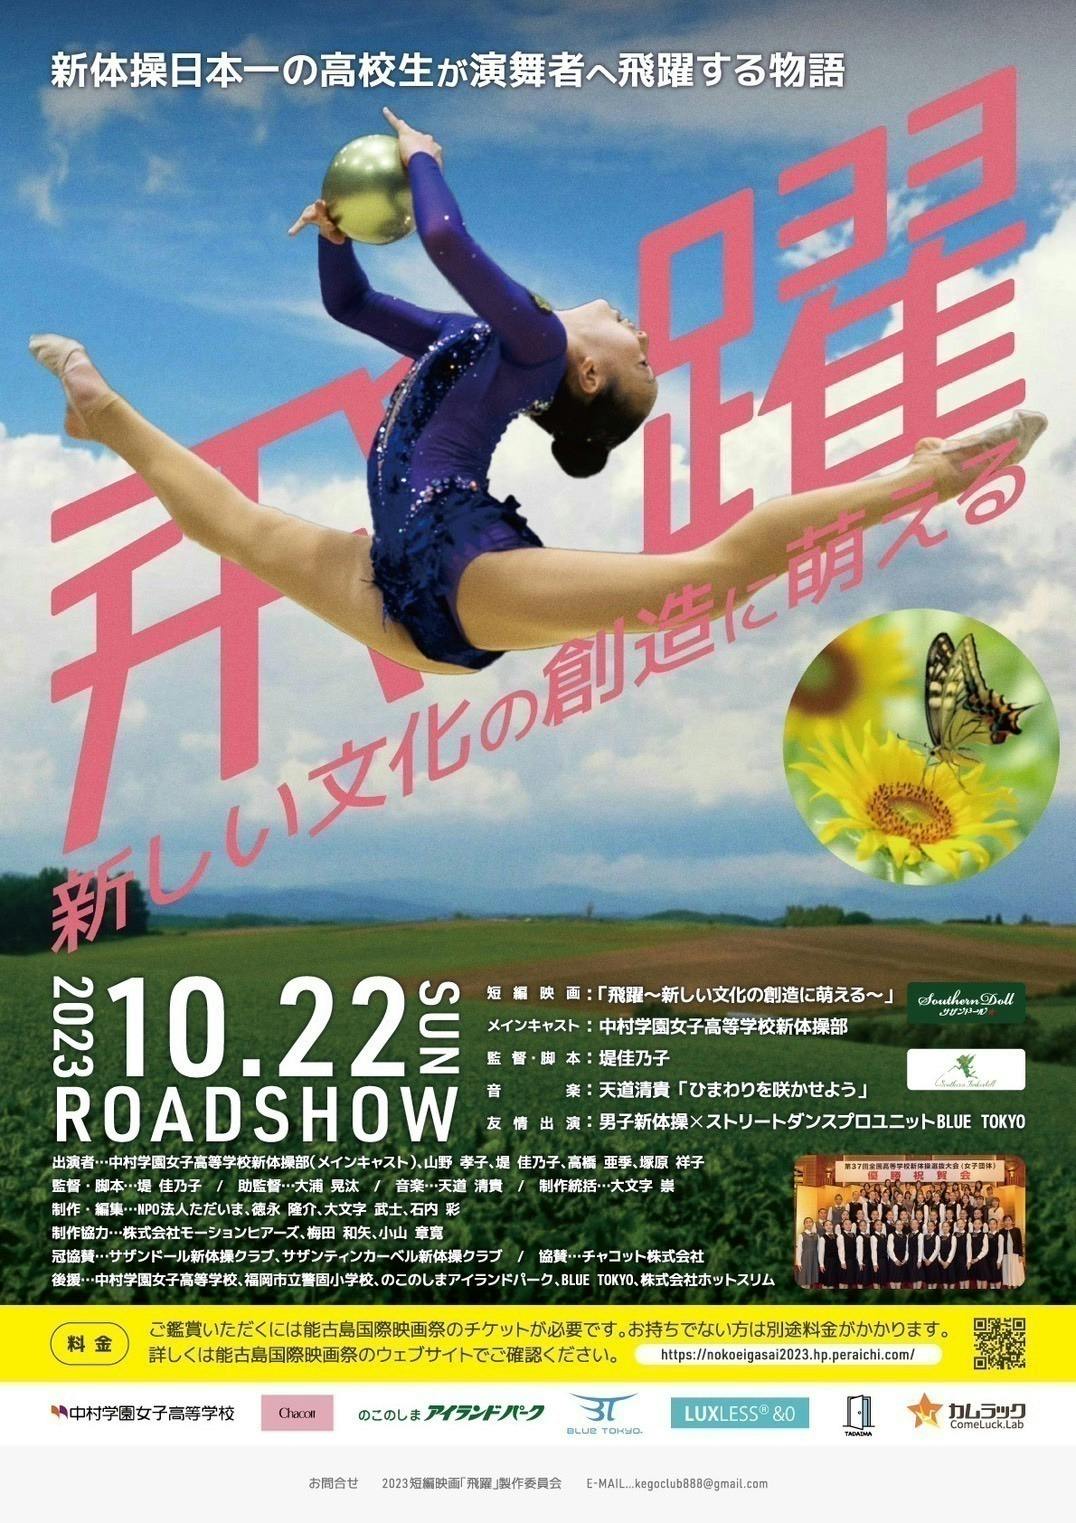 CAMPFIRE　新体操日本一の高校生が演舞者に「飛躍」する映画を製作　(キャンプファイヤー)